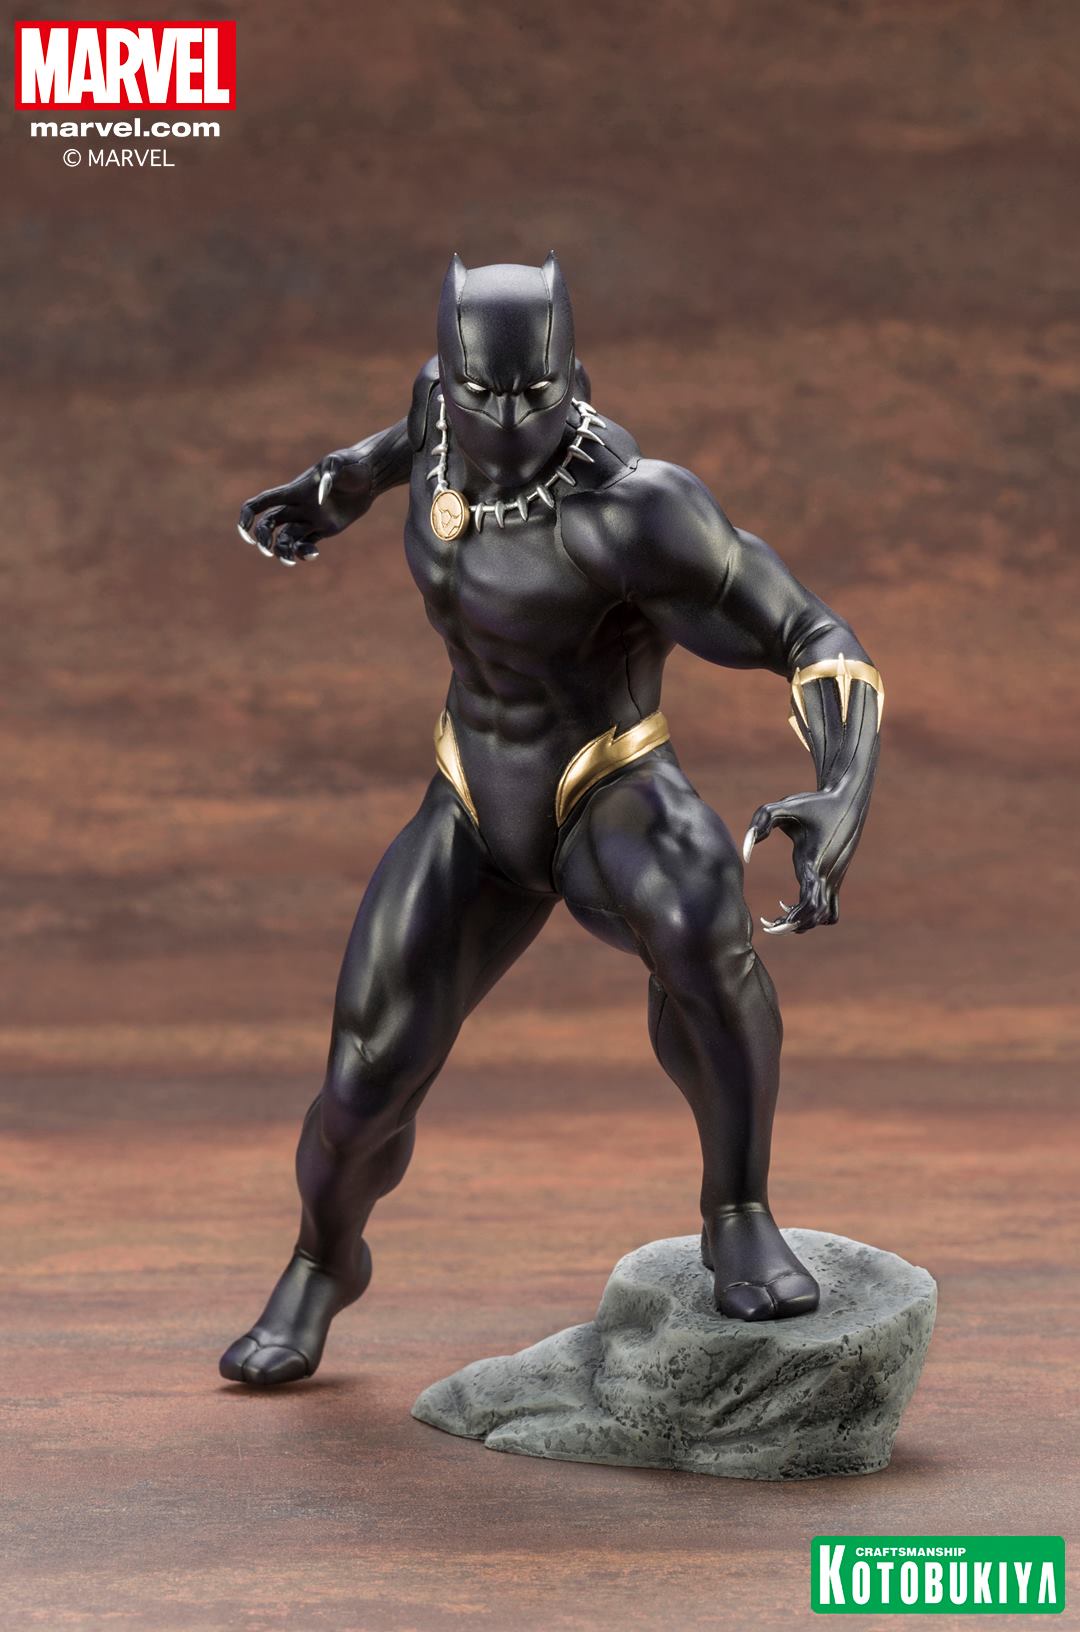 Kotobukiya Marvel Avenger Series ARTFX+ Black Panther Statue